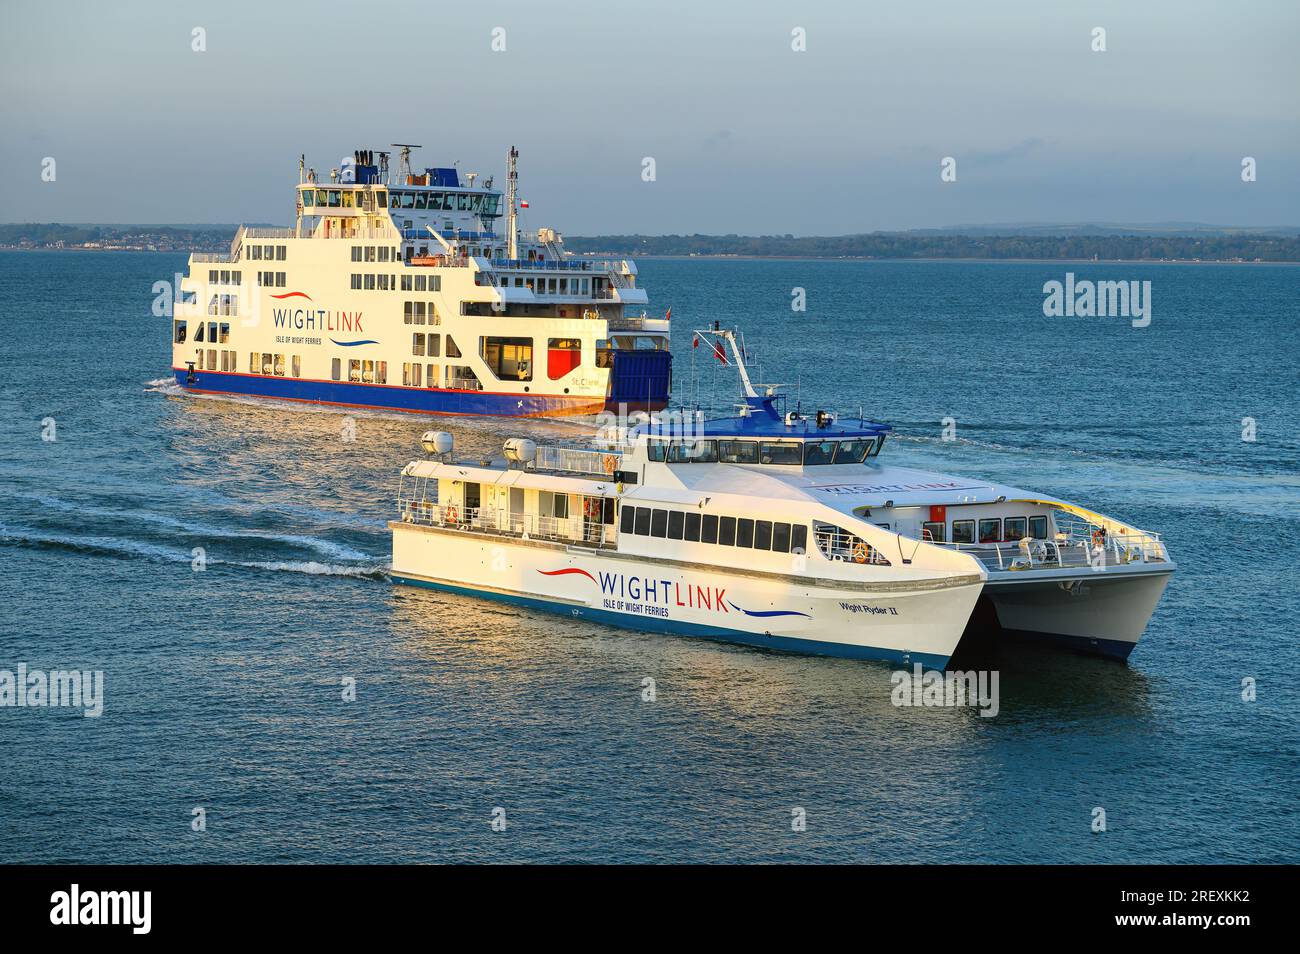 Wightlink ferry de passagers passant. La société exploite des services de voitures et de passagers de Portsmouth à l'île de Wight. Banque D'Images